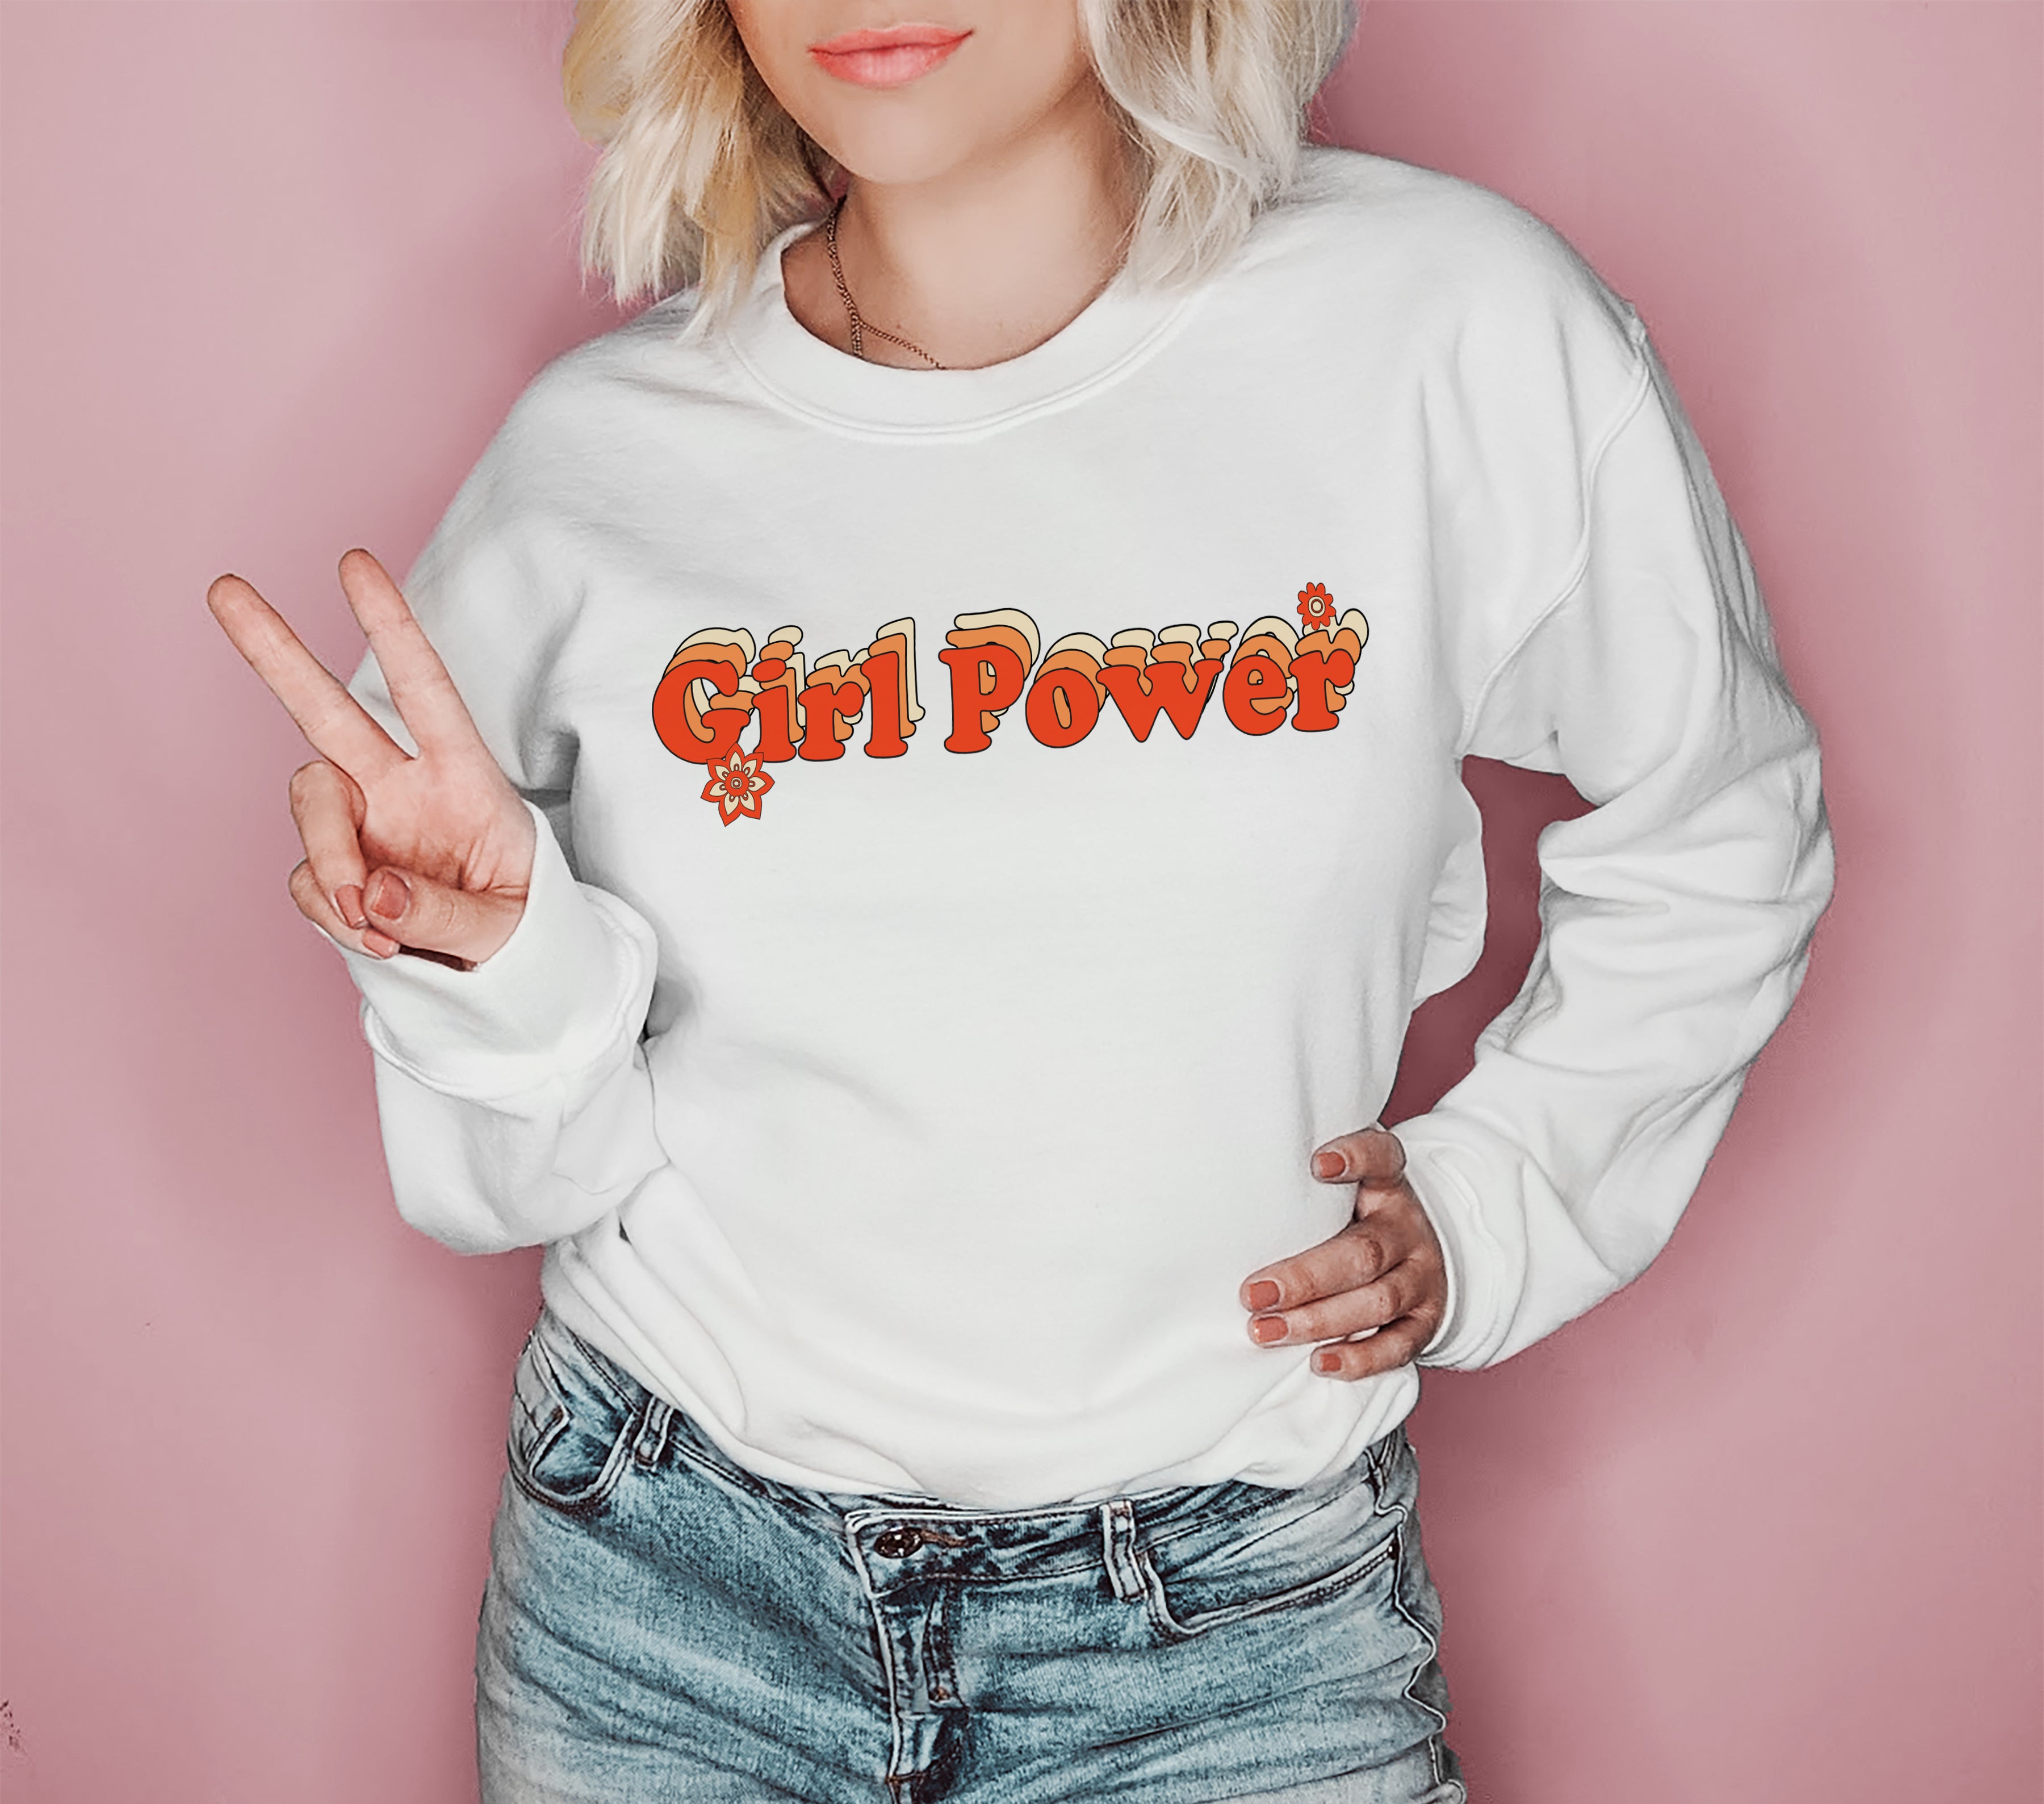 White sweatshirt that says girl power - HighCiti